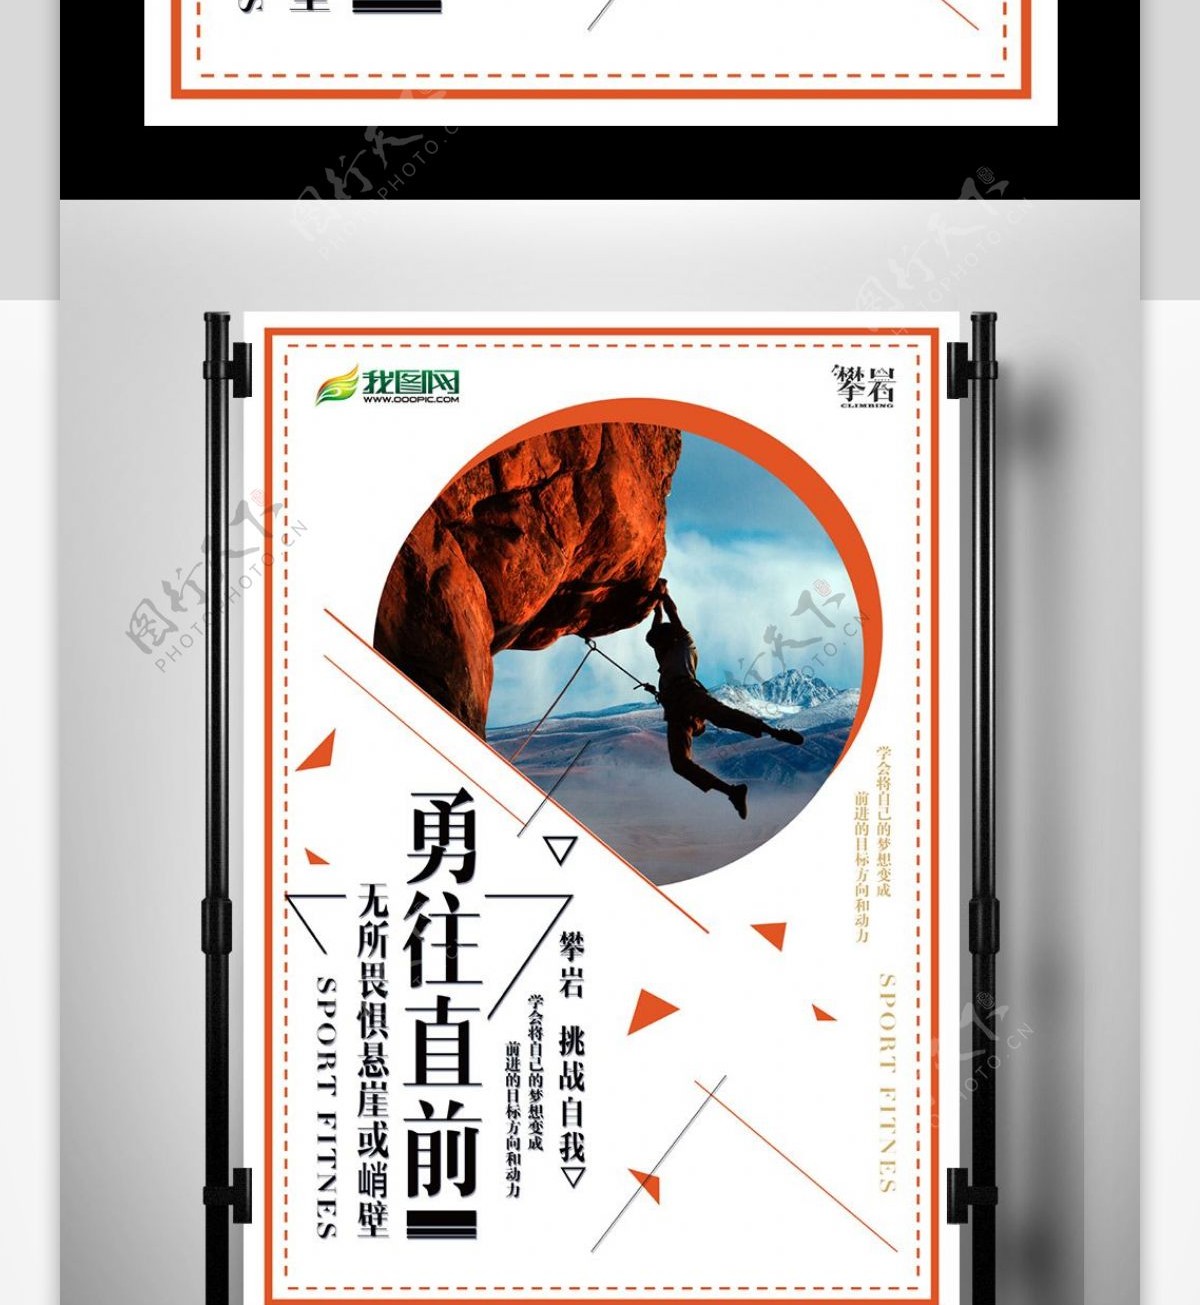 扁平化攀岩活动俱乐部宣传海报